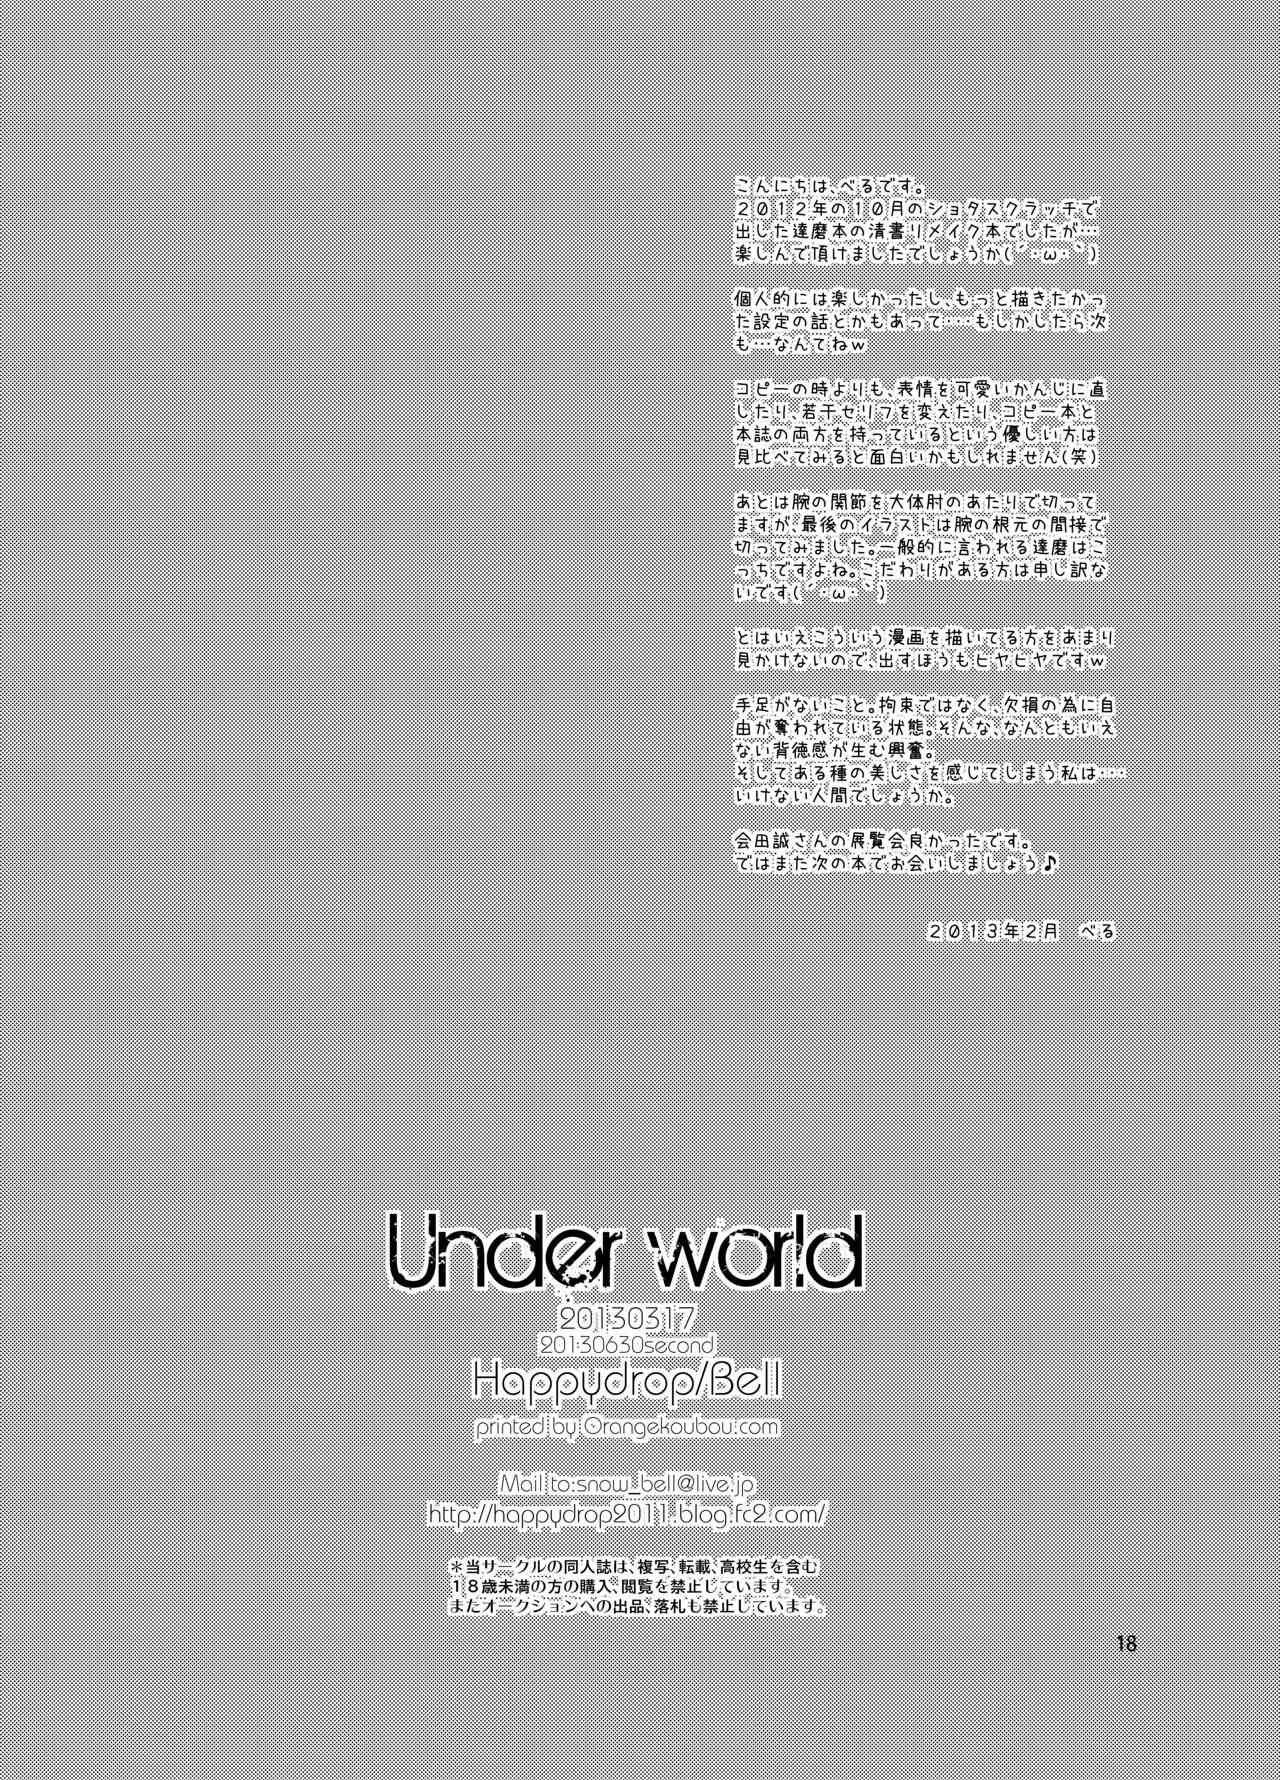 Underworld 16